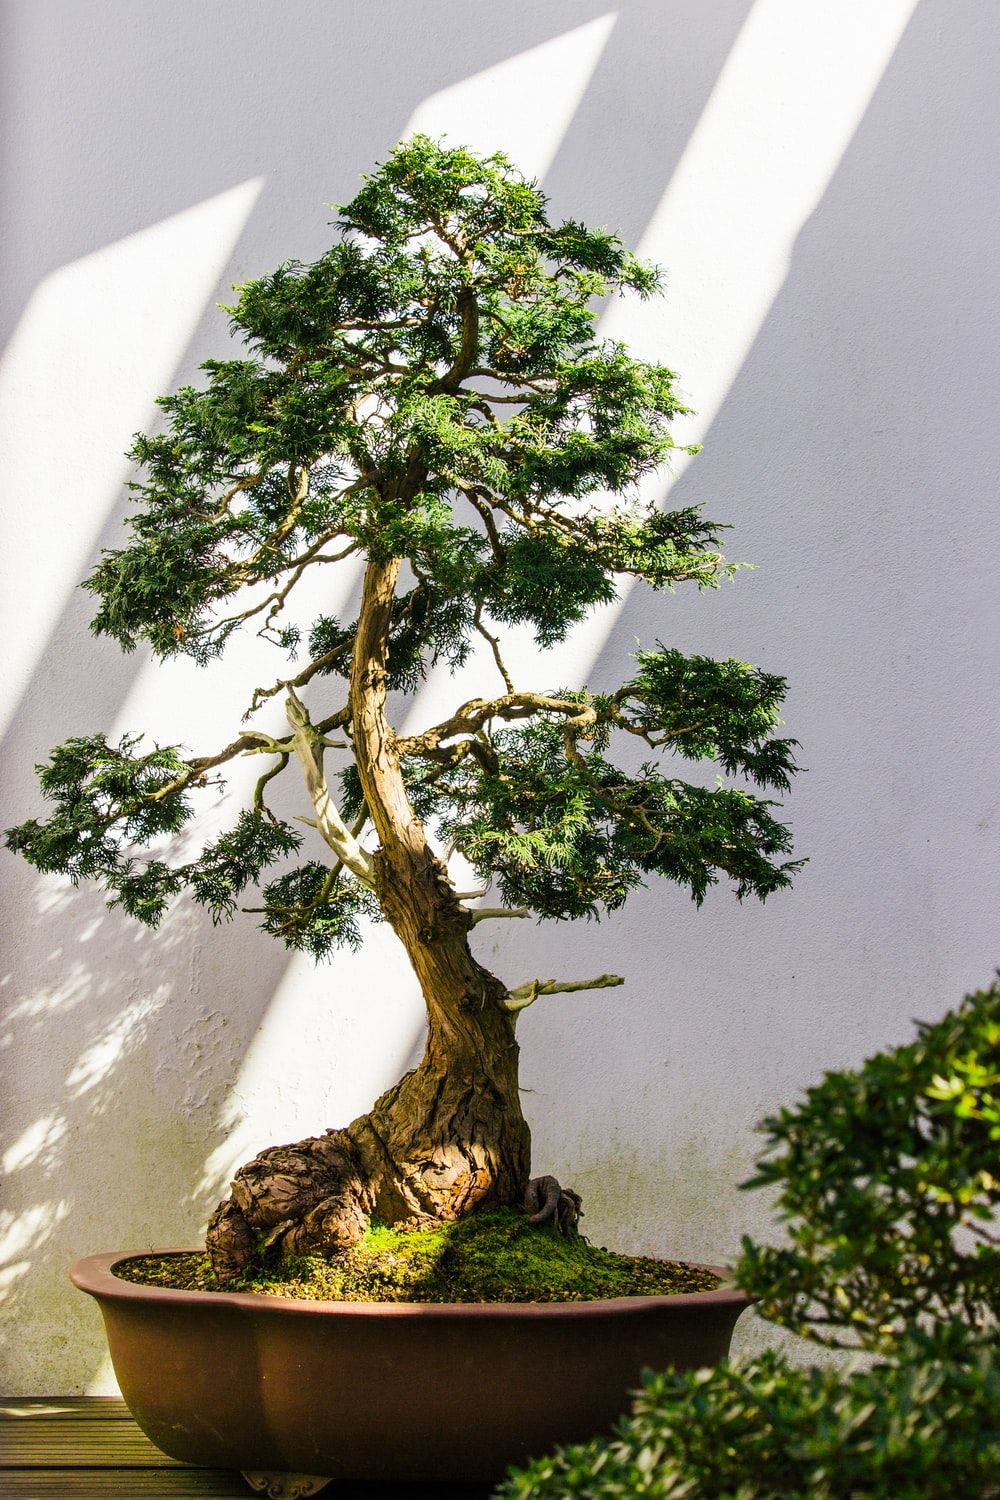  عکس زیبا و دیدنی از درخت بونسای بزرگ با کیفیت فوق العاده 